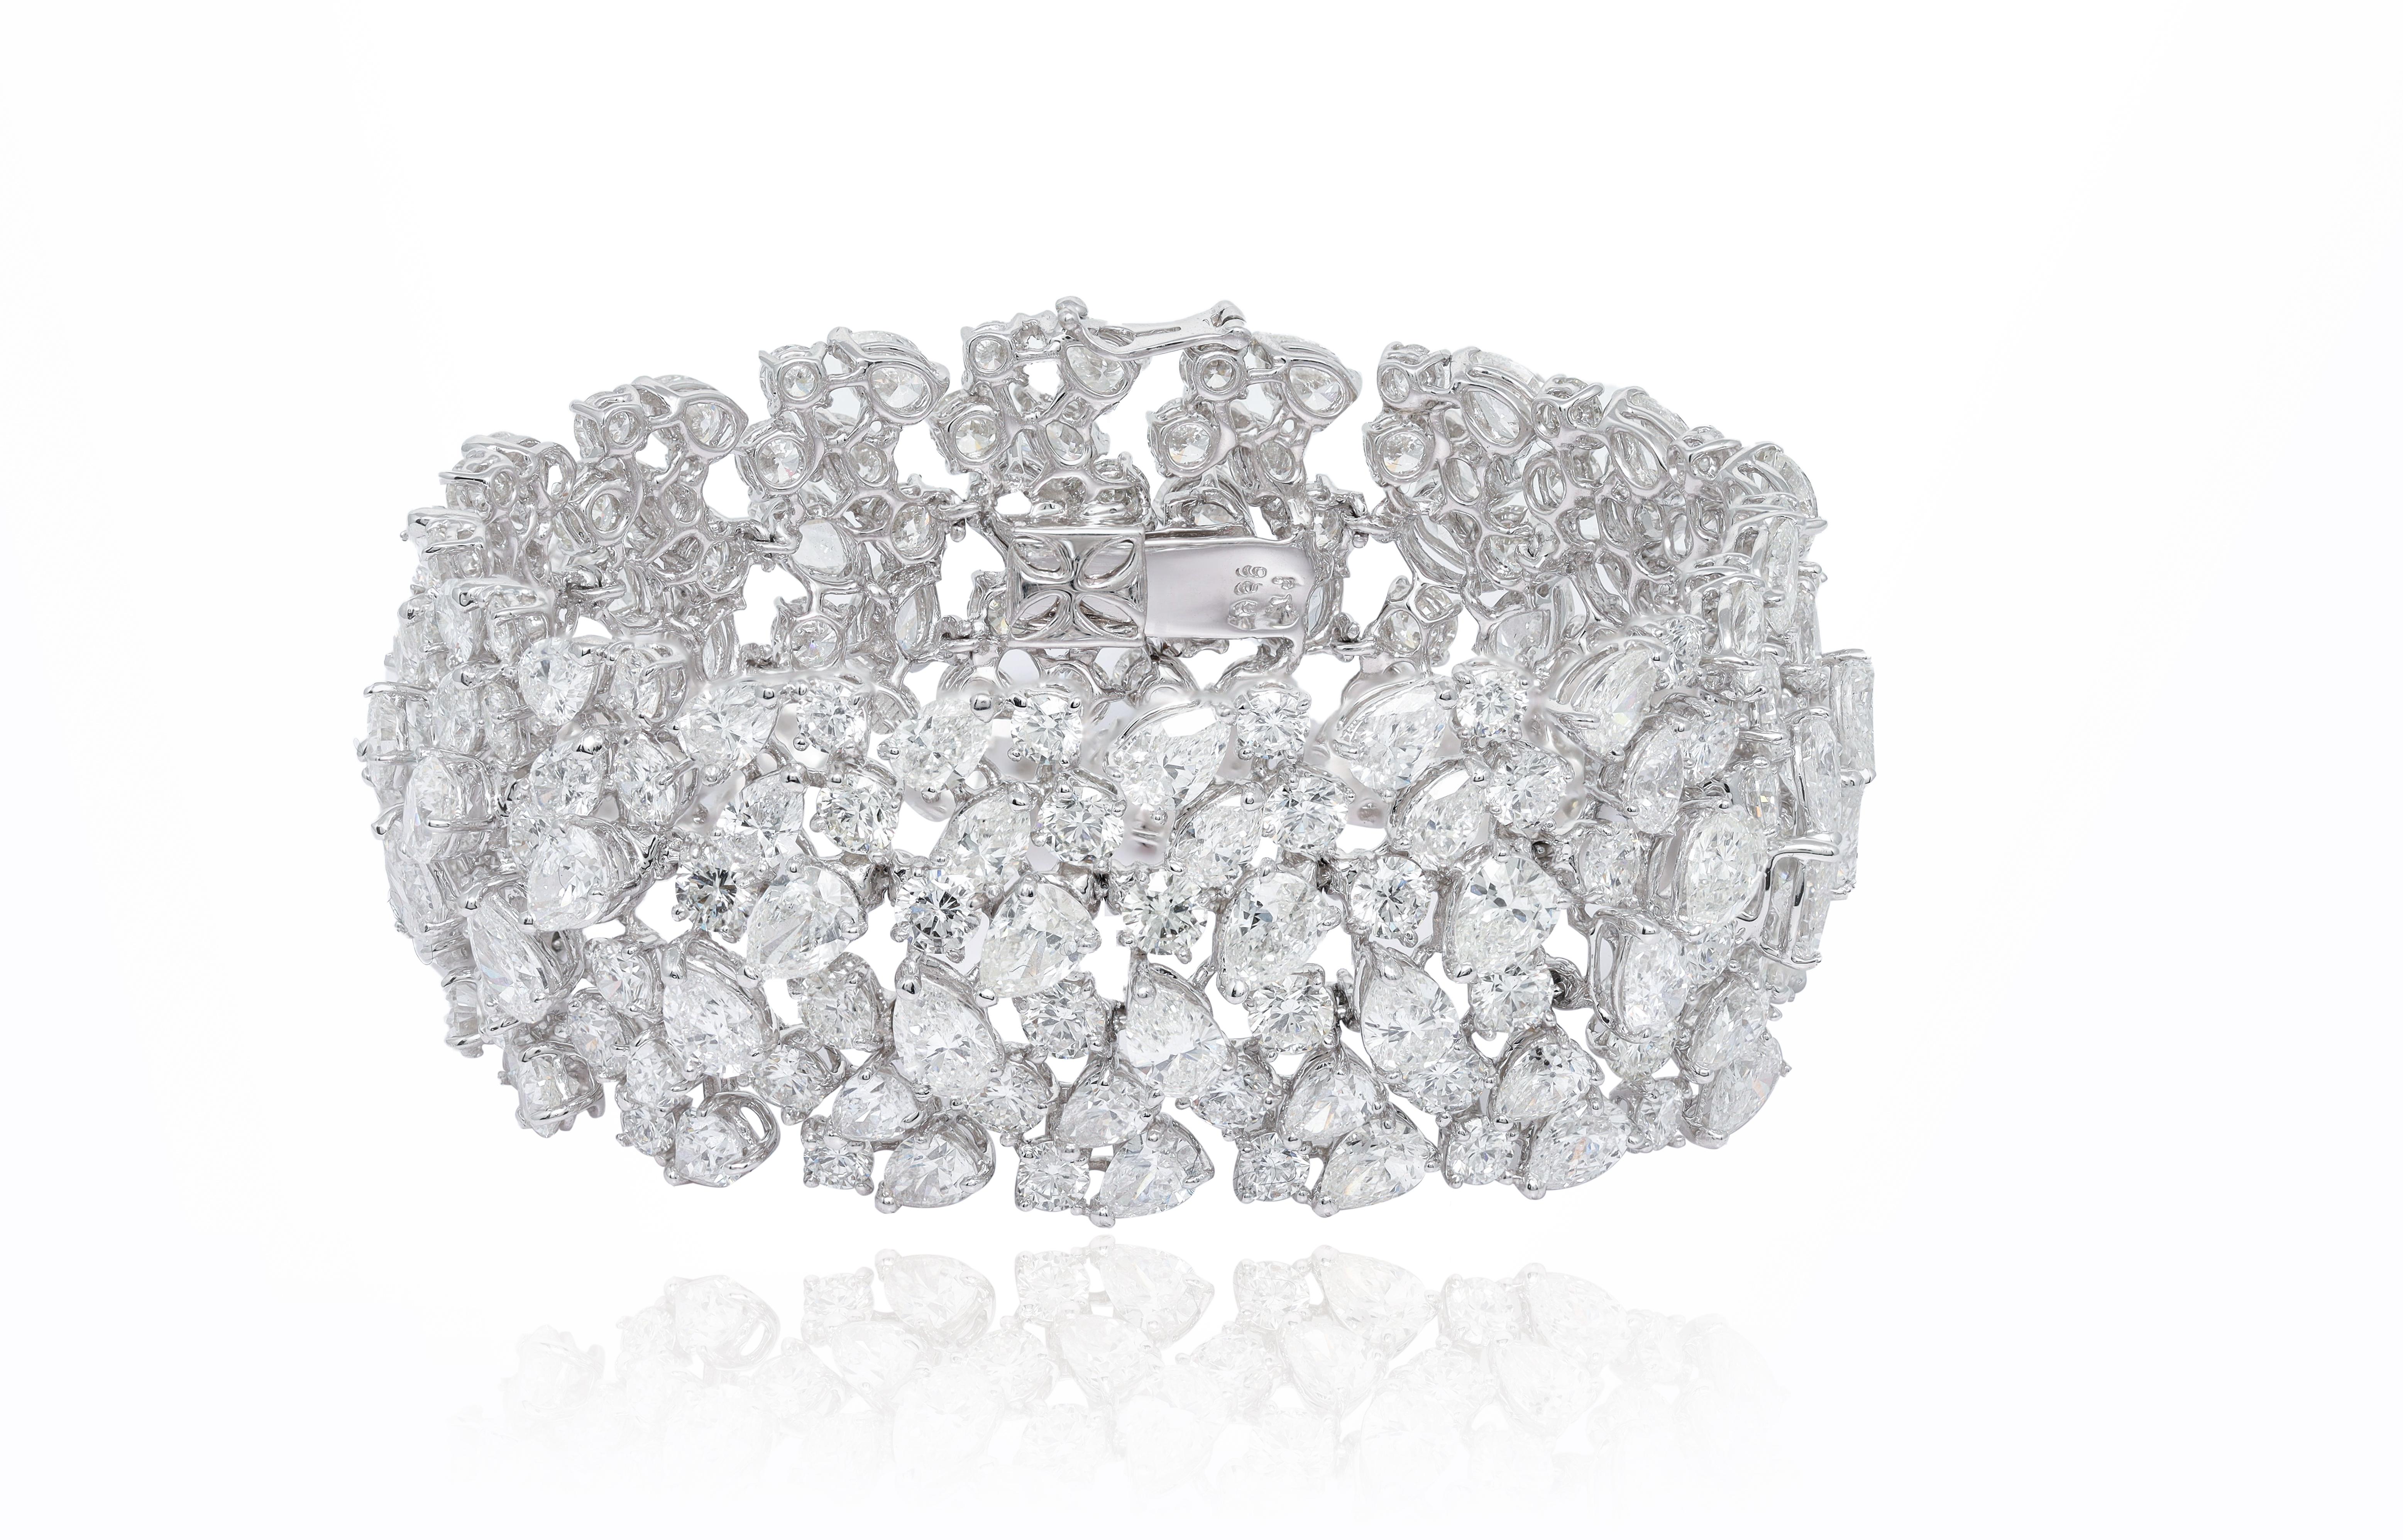 Platin-Diamant-Mode-Armband mit Clustern aus 52,00 Karat birnenförmigen und runden Diamanten
Diana M. ist seit über 35 Jahren ein führender Anbieter von hochwertigem Schmuck.
Diana M ist eine zentrale Anlaufstelle für alle Ihre Schmuckeinkäufe und